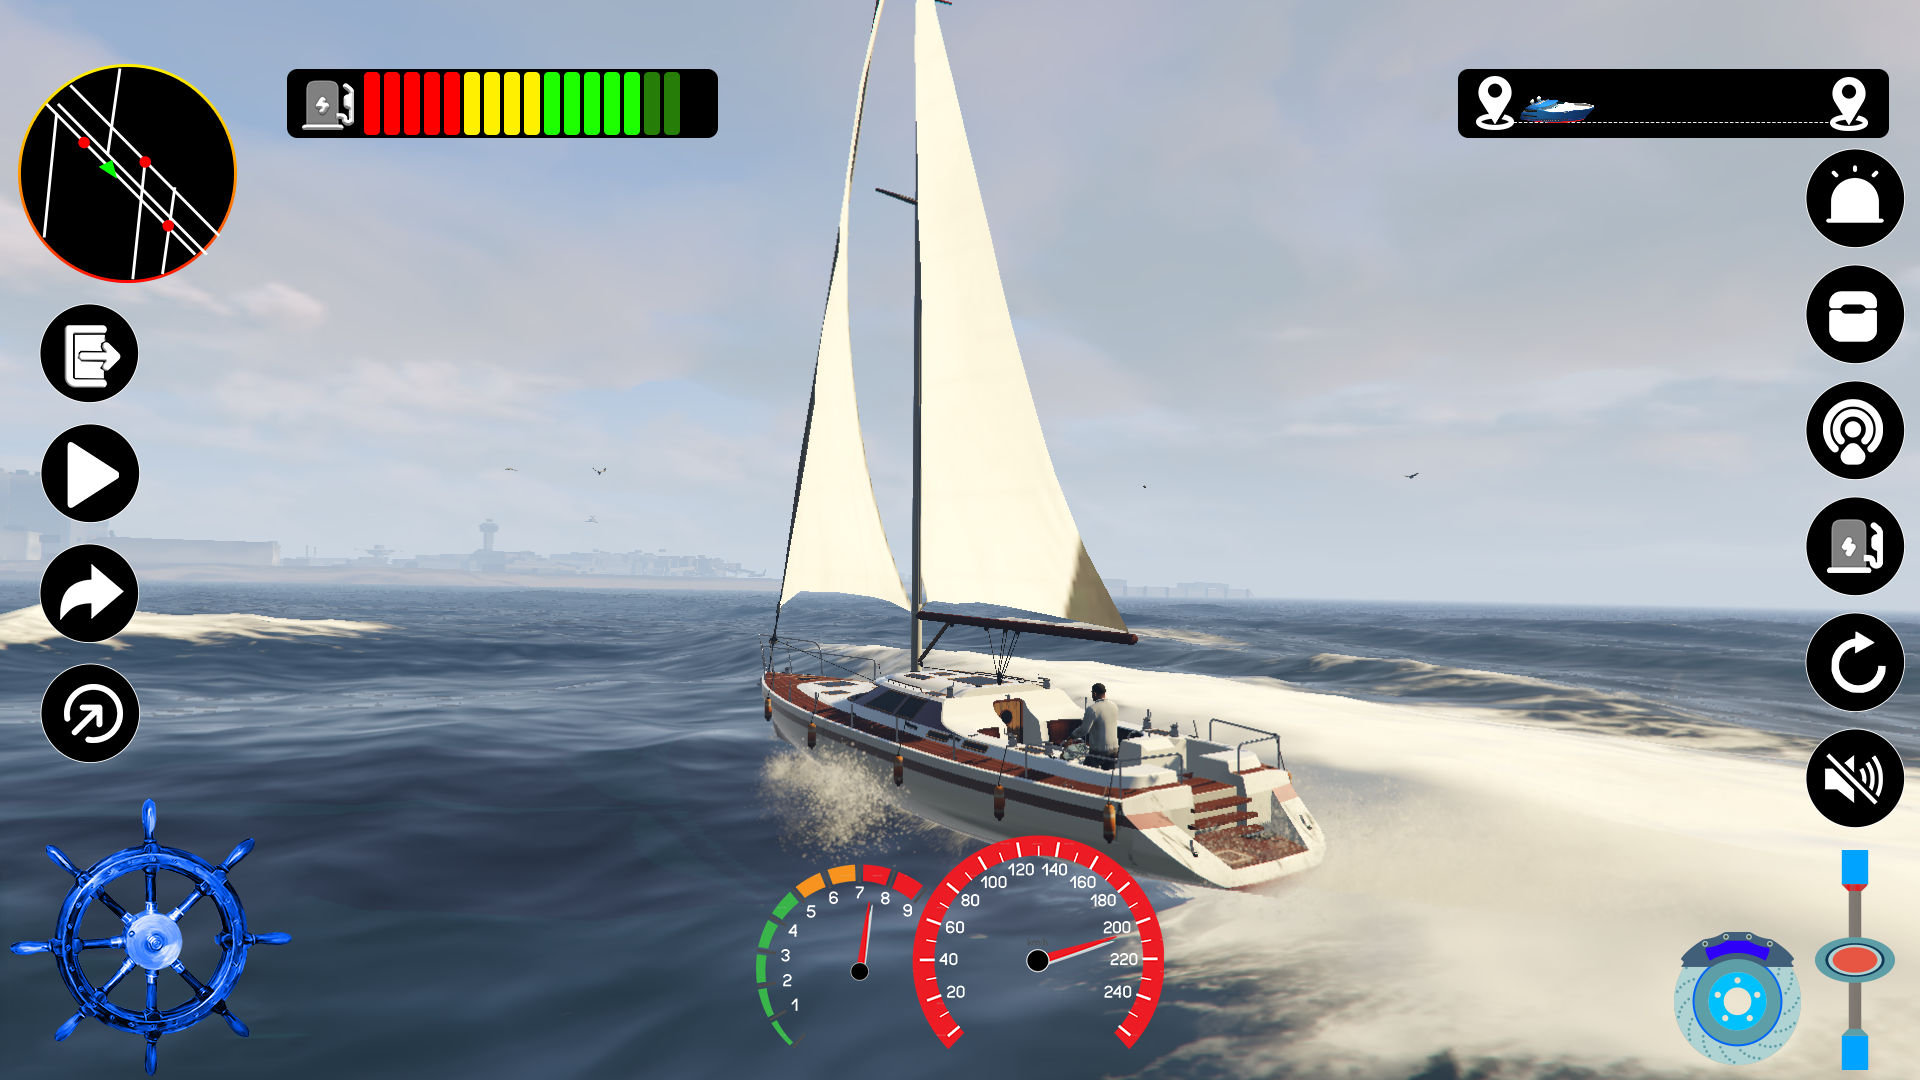 Race Boat Simulator - 3D Stunt Racing Driving Ship in Ocean for